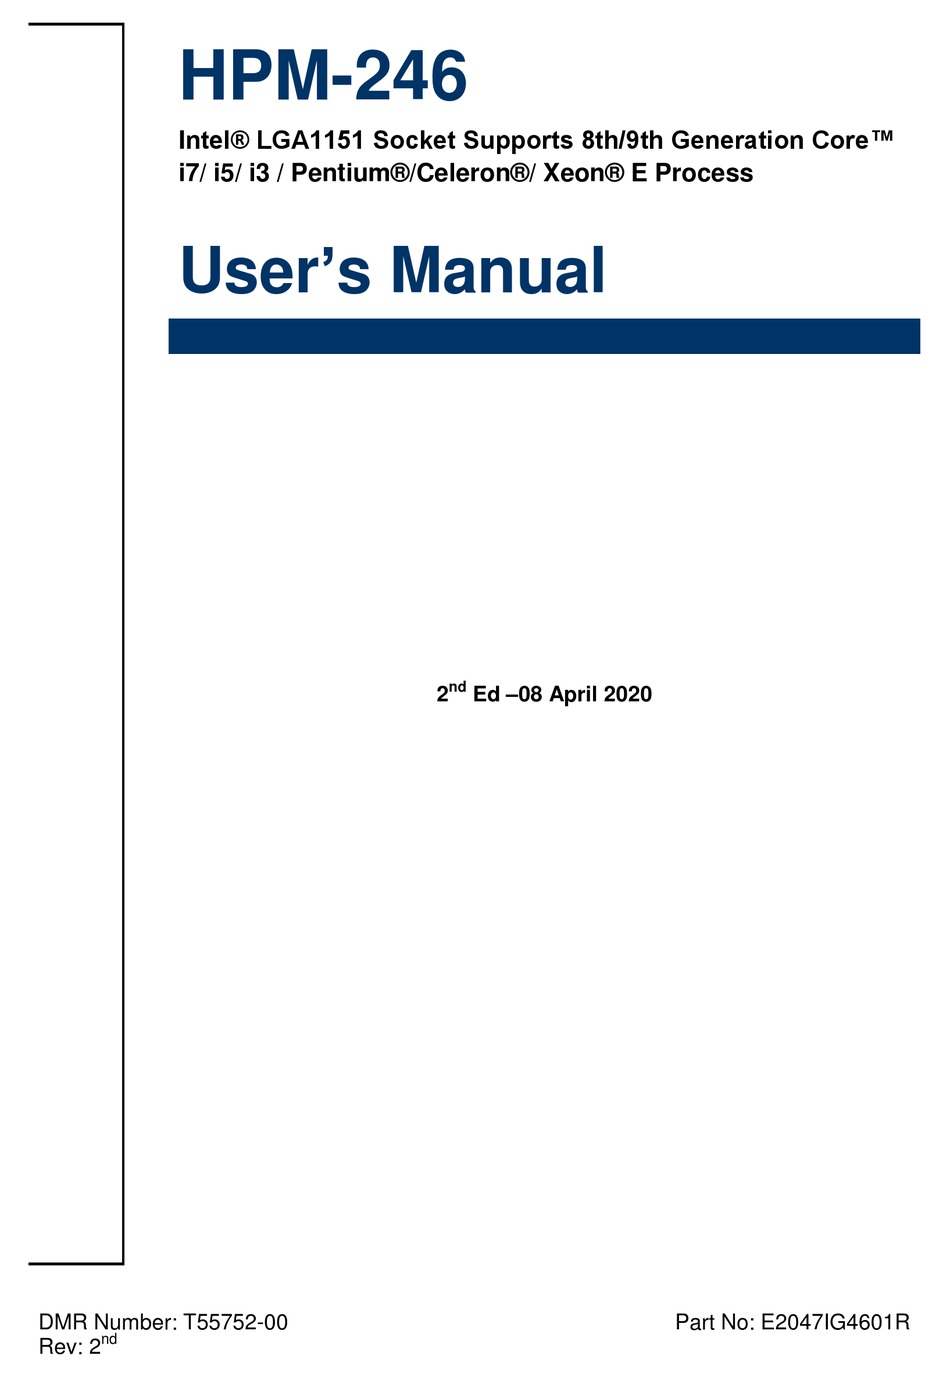 BCM HPM-246 USER MANUAL Pdf Download | ManualsLib